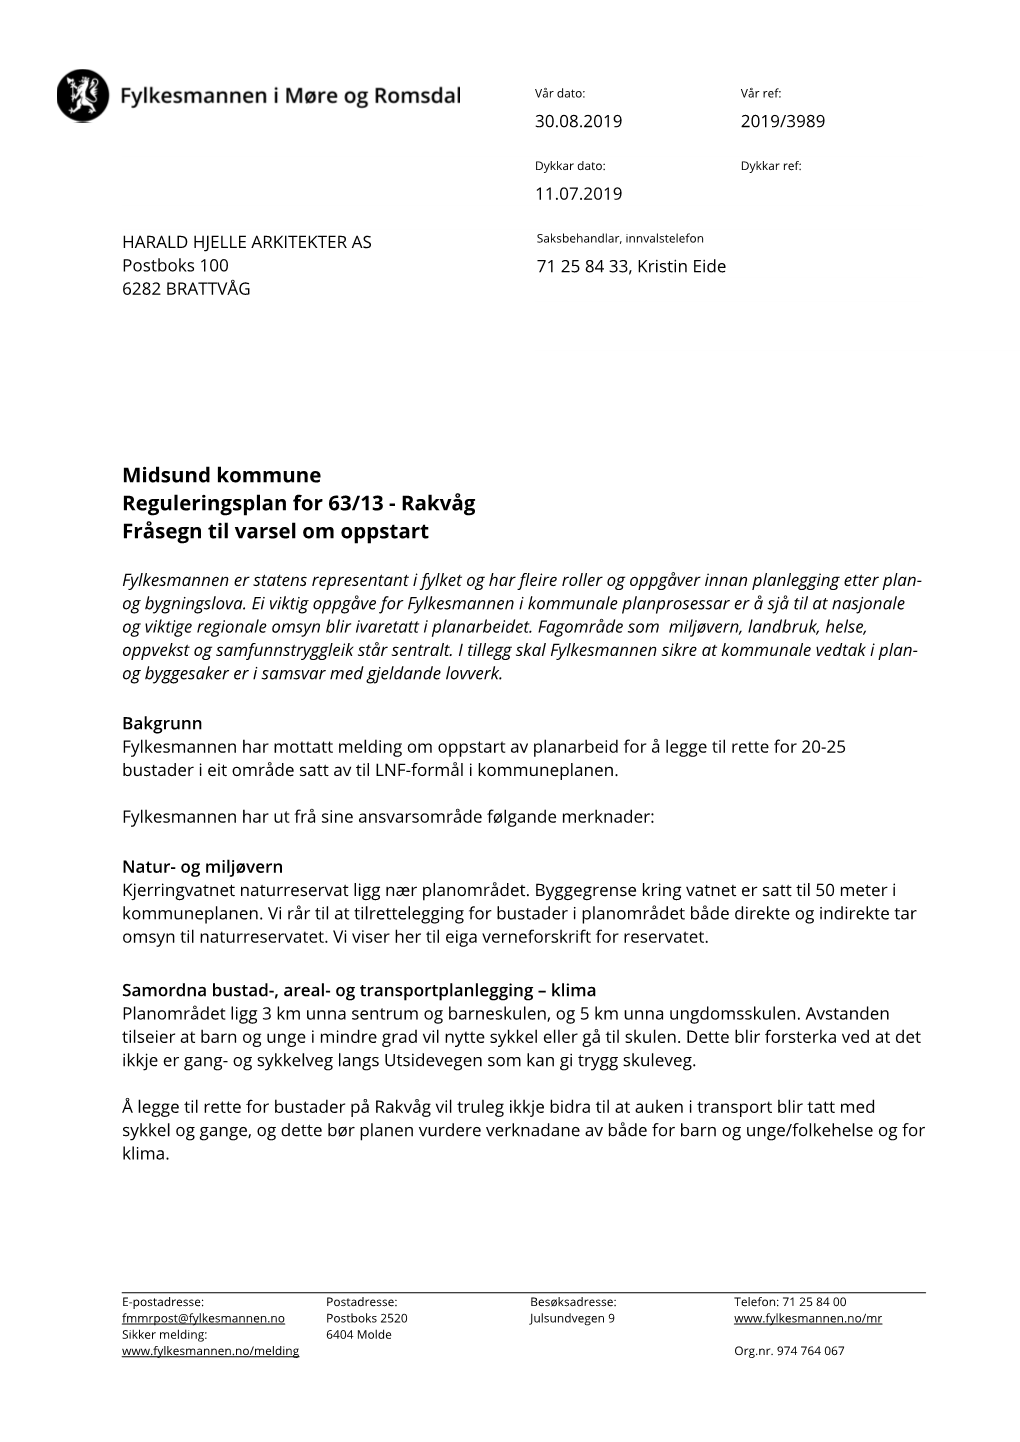 Midsund Kommune Reguleringsplan for 63/13 - Rakvåg Fråsegn Til Varsel Om Oppstart